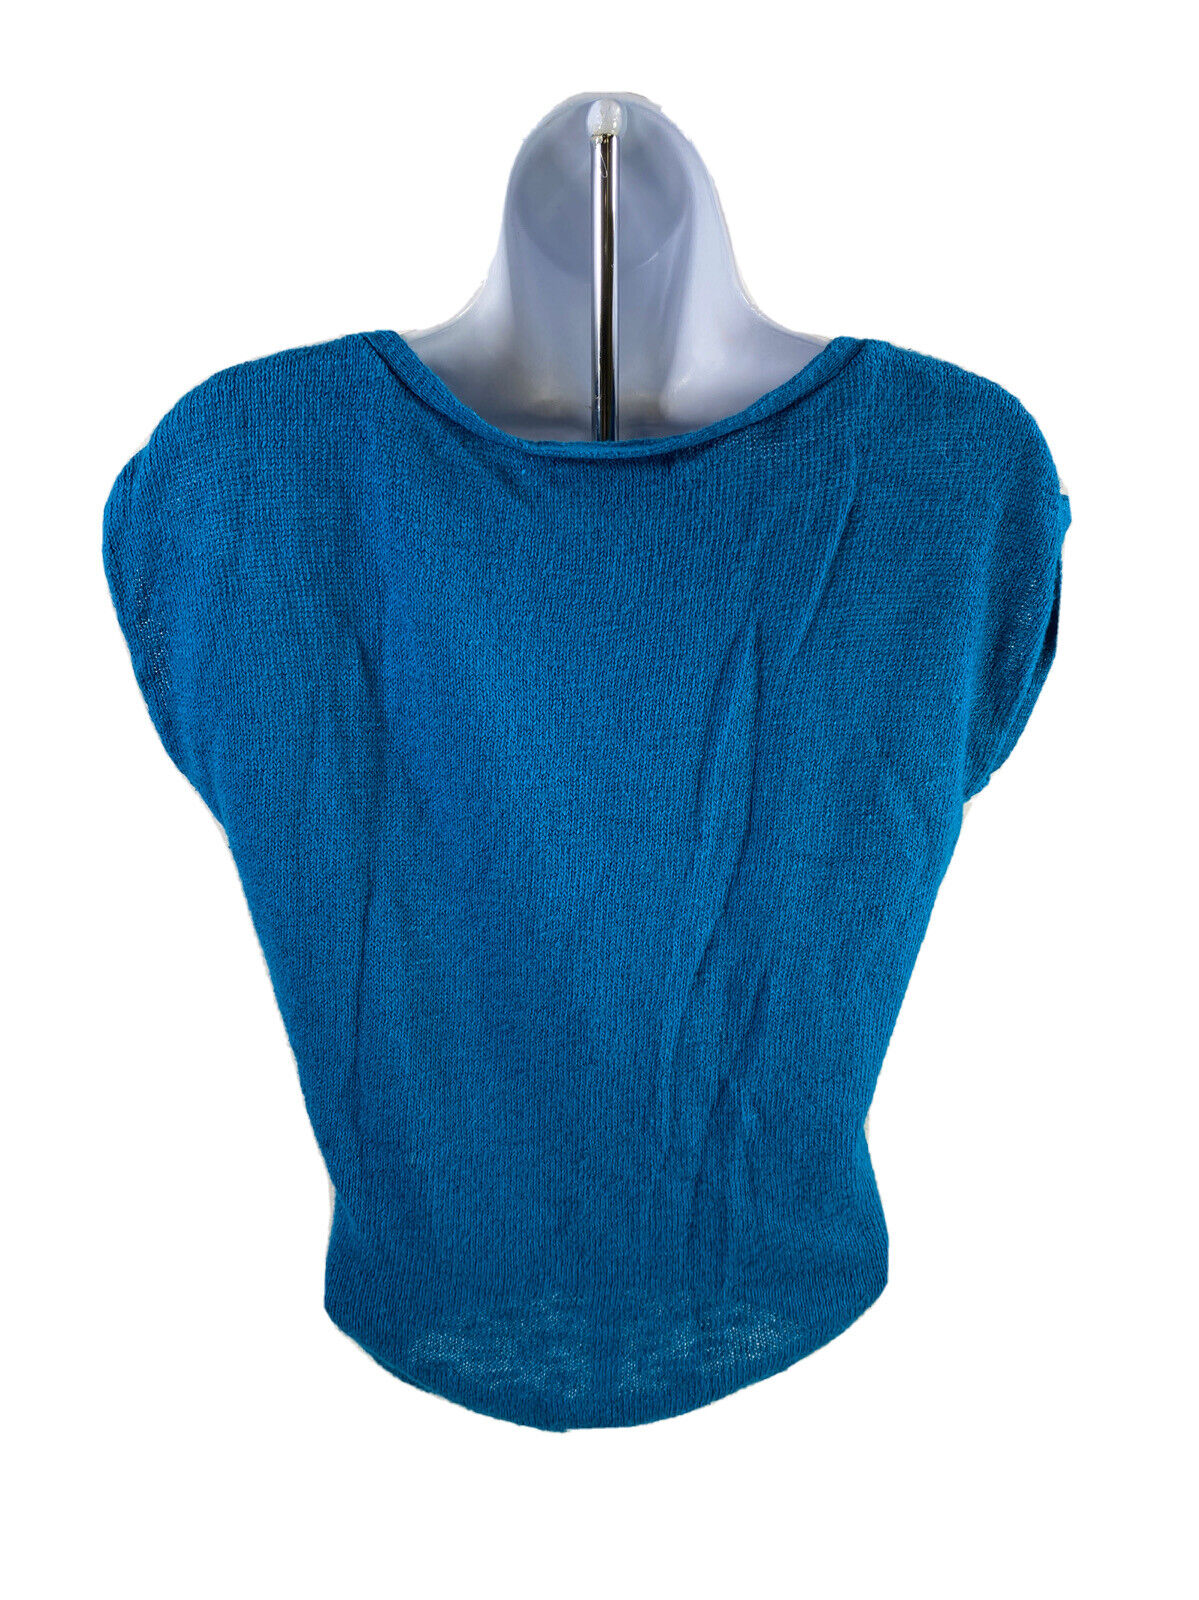 Banana Republic Women's Blue Linen Blend Sleeveless Sweater - XS